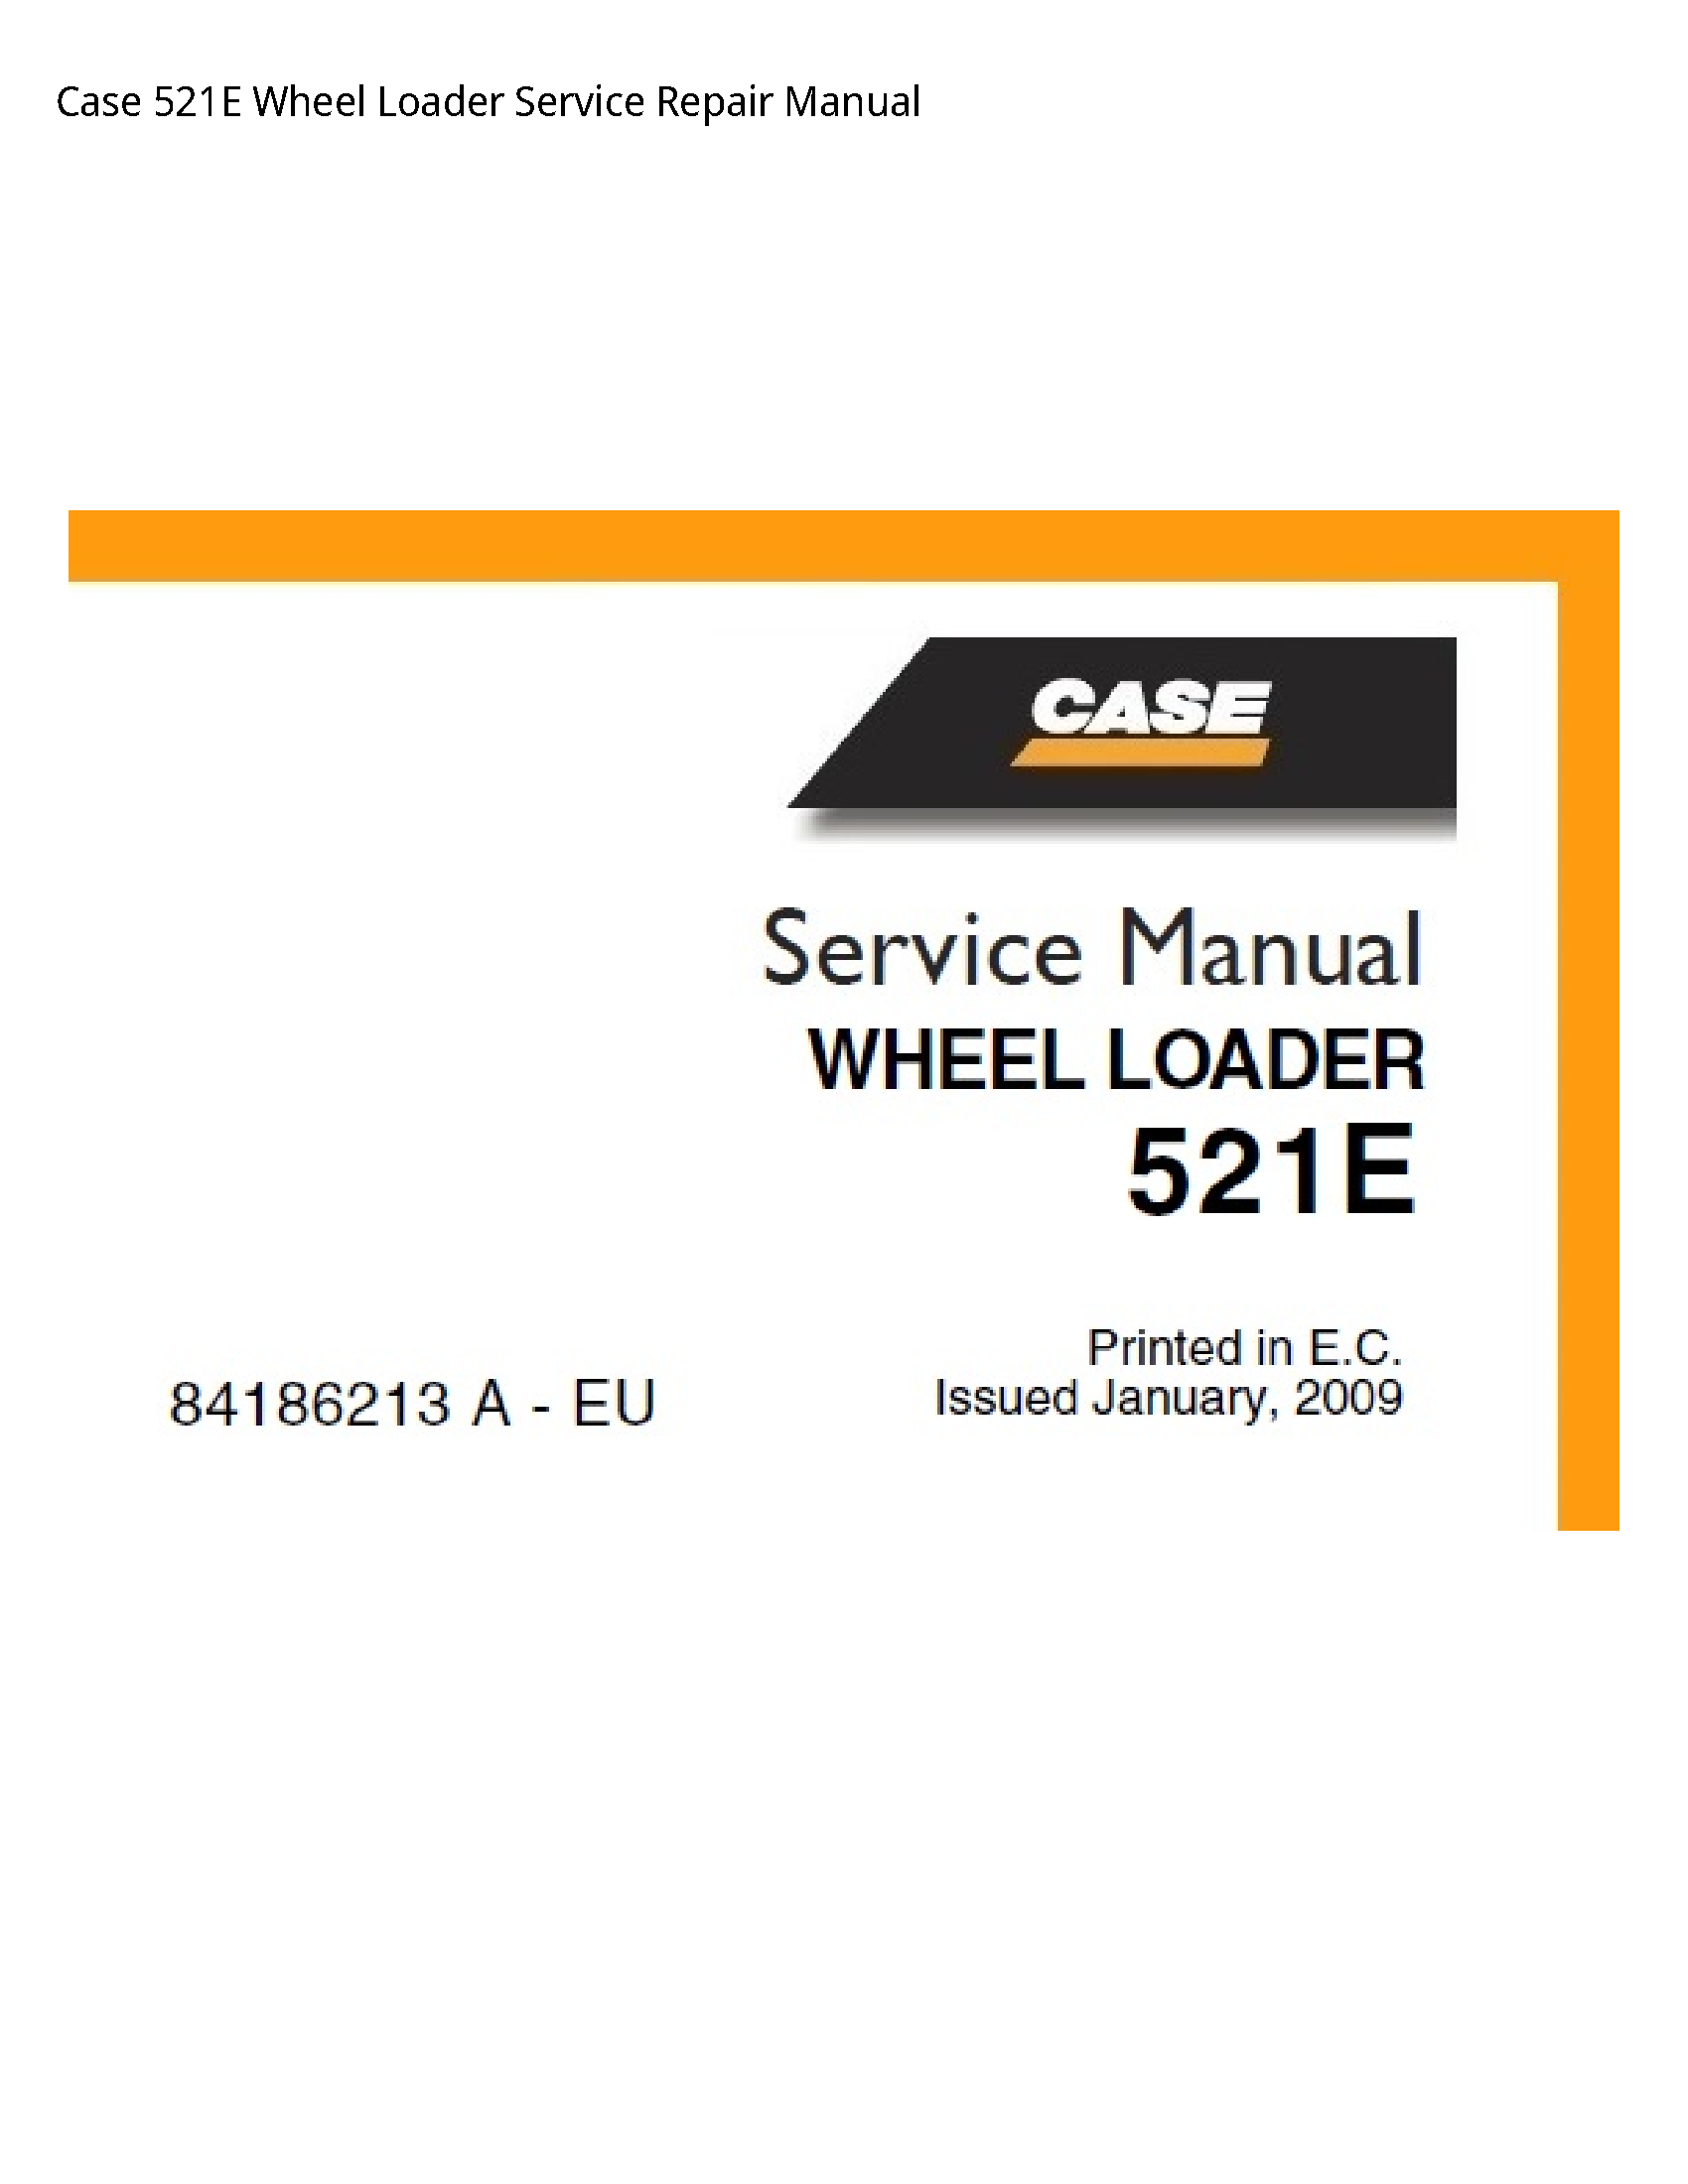 Case/Case IH 521E Wheel Loader manual